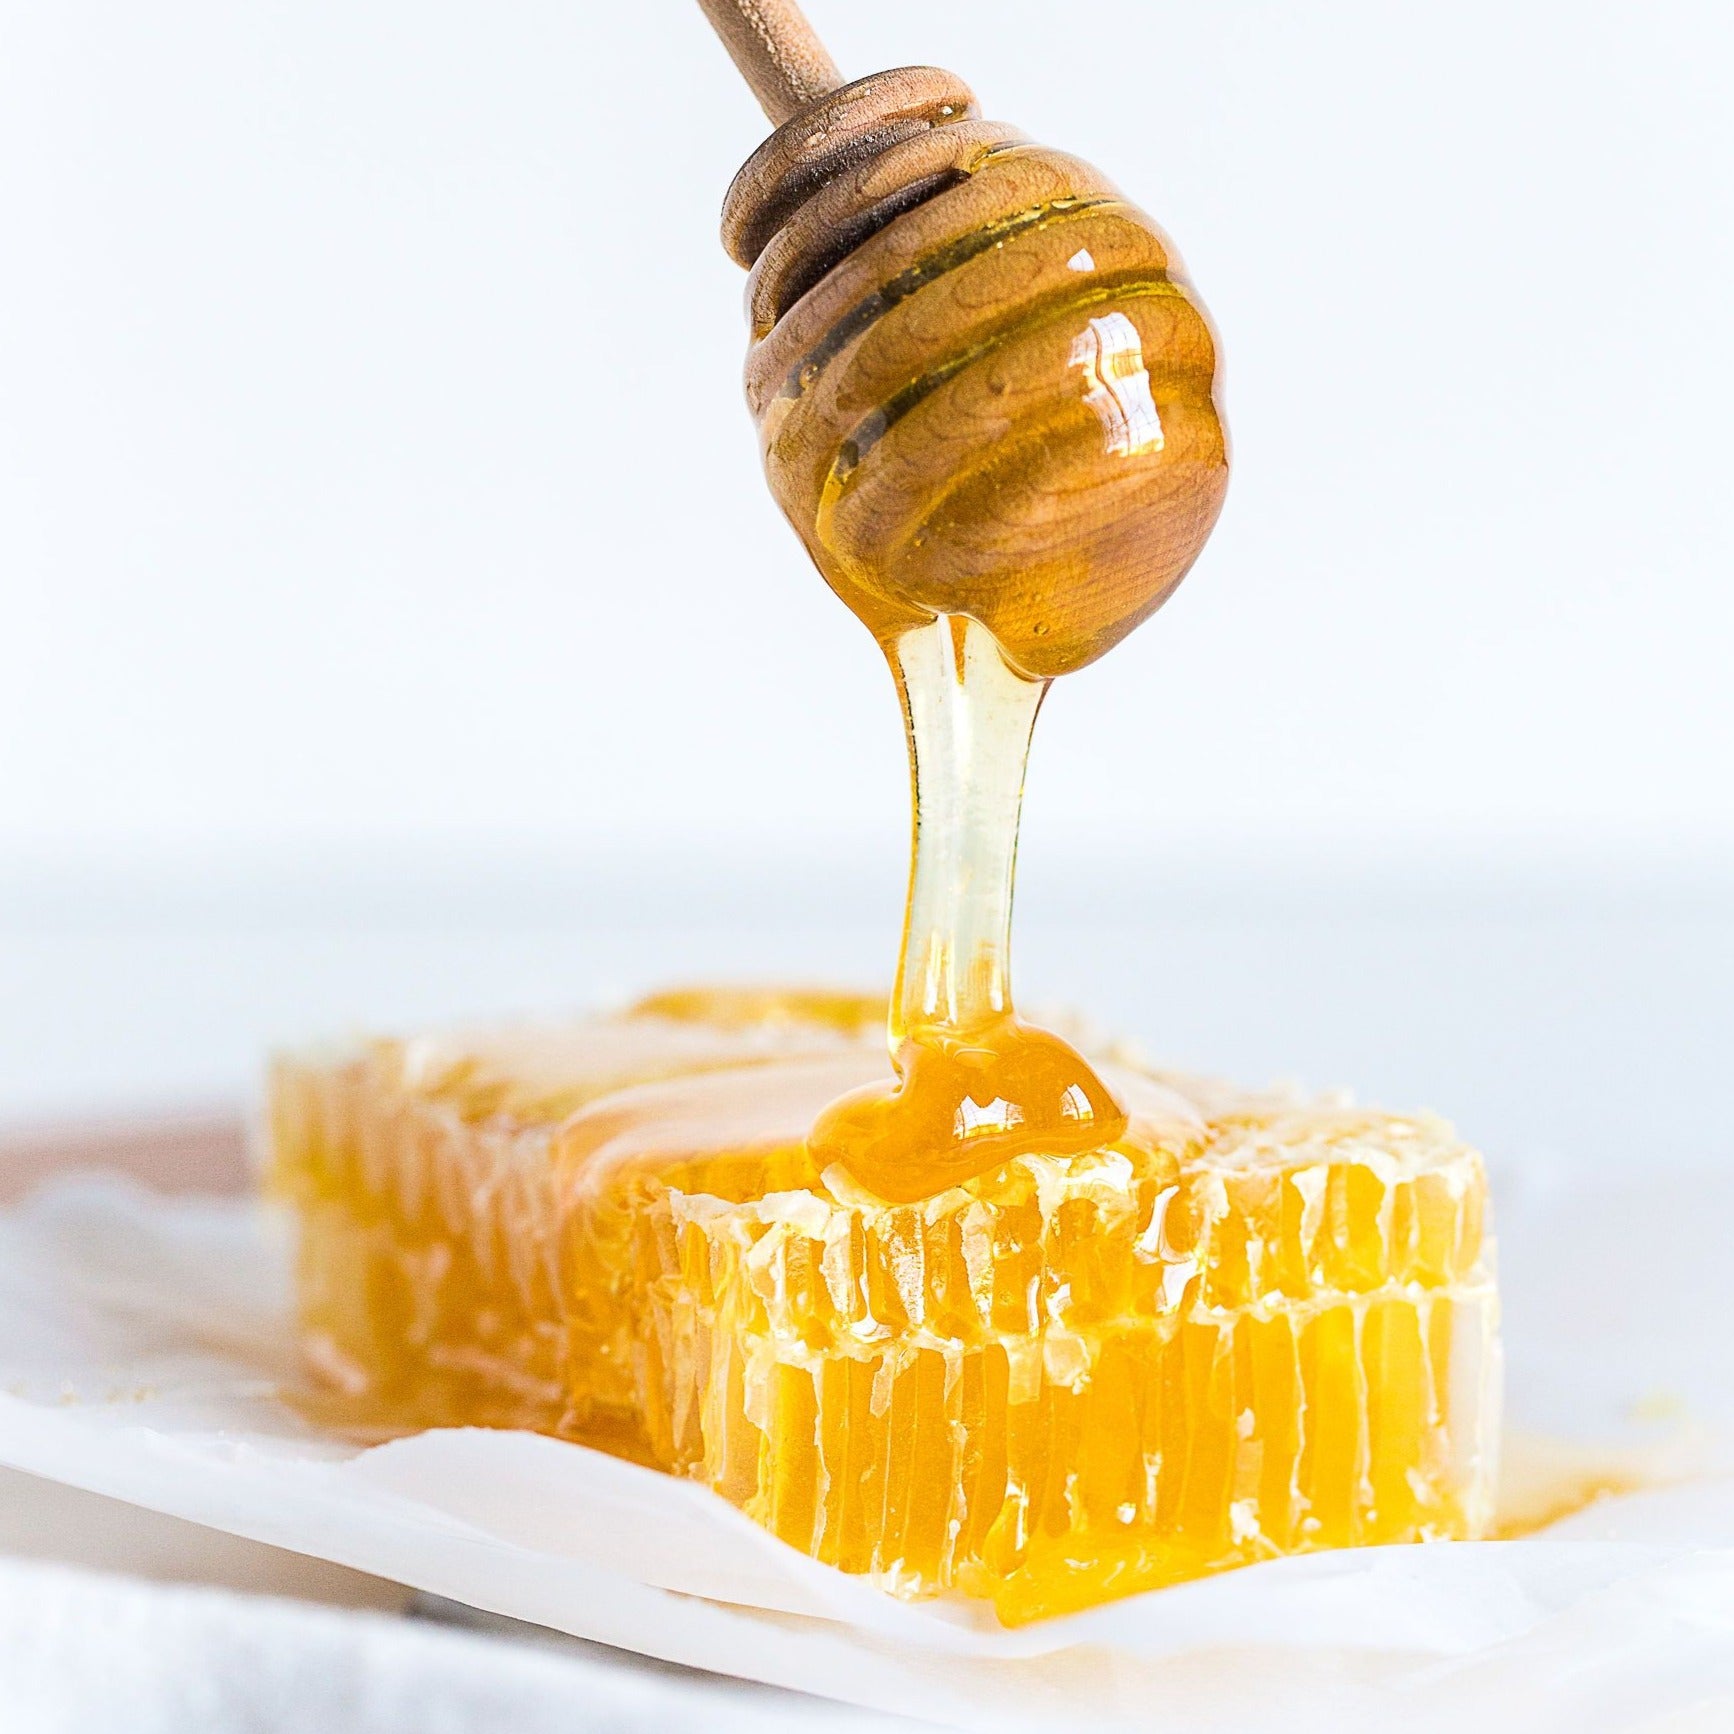 Miel en peigne - 250g Pure Ontario – Bee Local 416